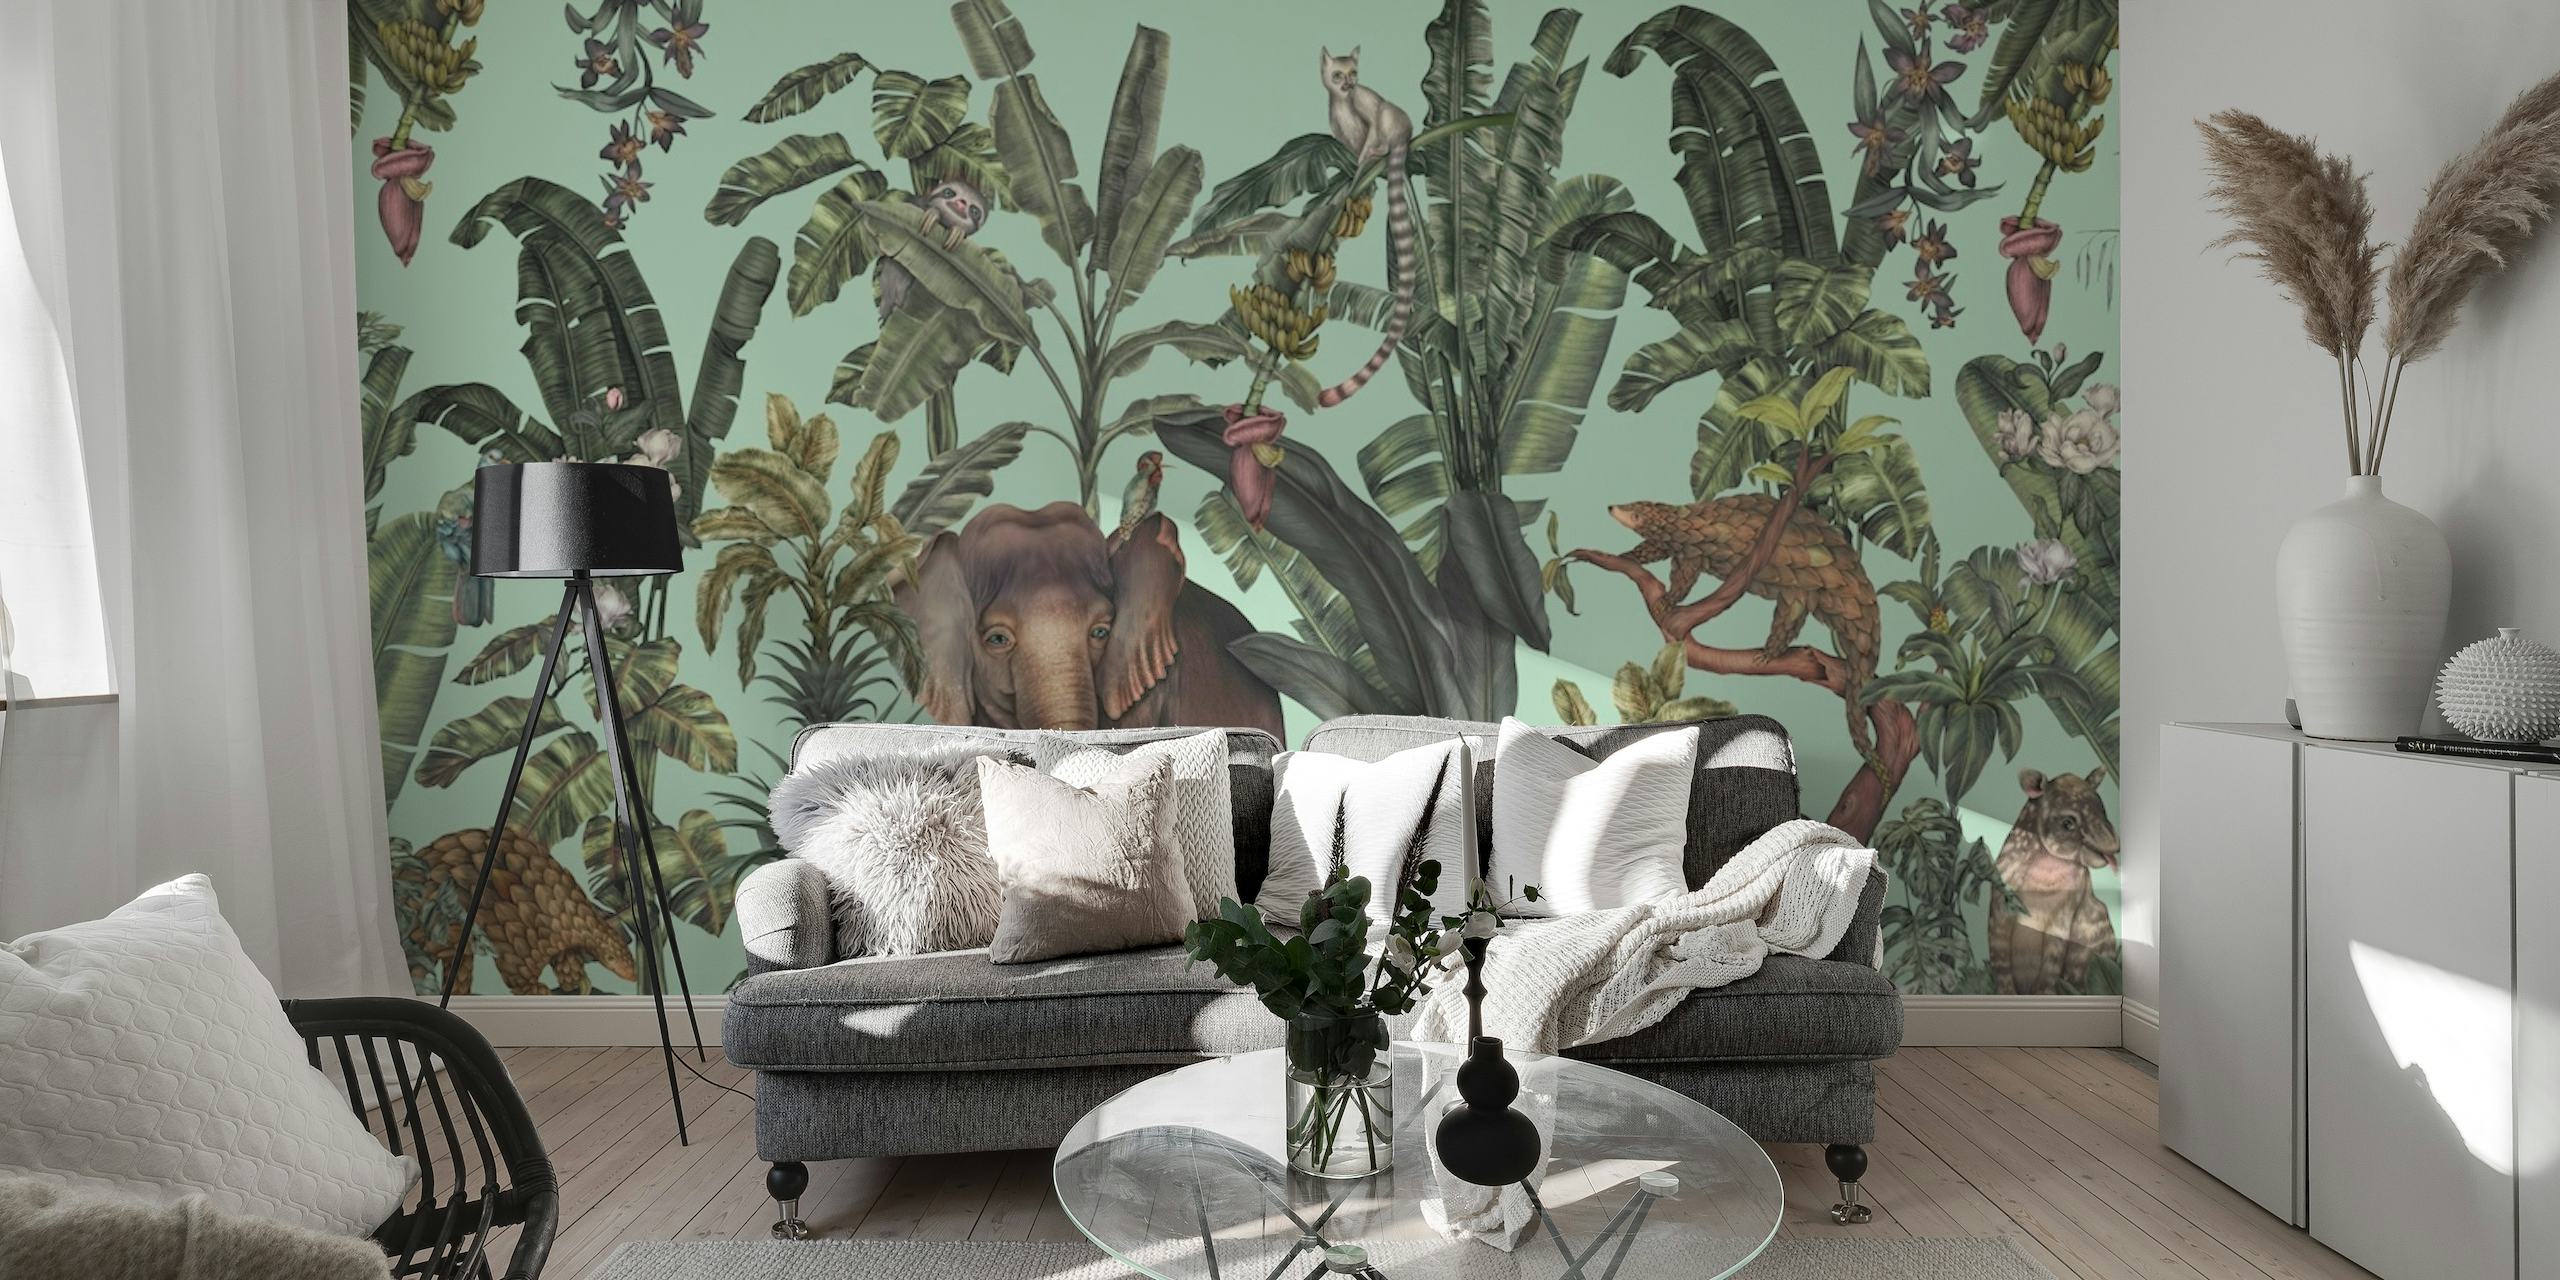 Mural de parede verde claro com tema de selva apresentando flora tropical e vida selvagem escondida